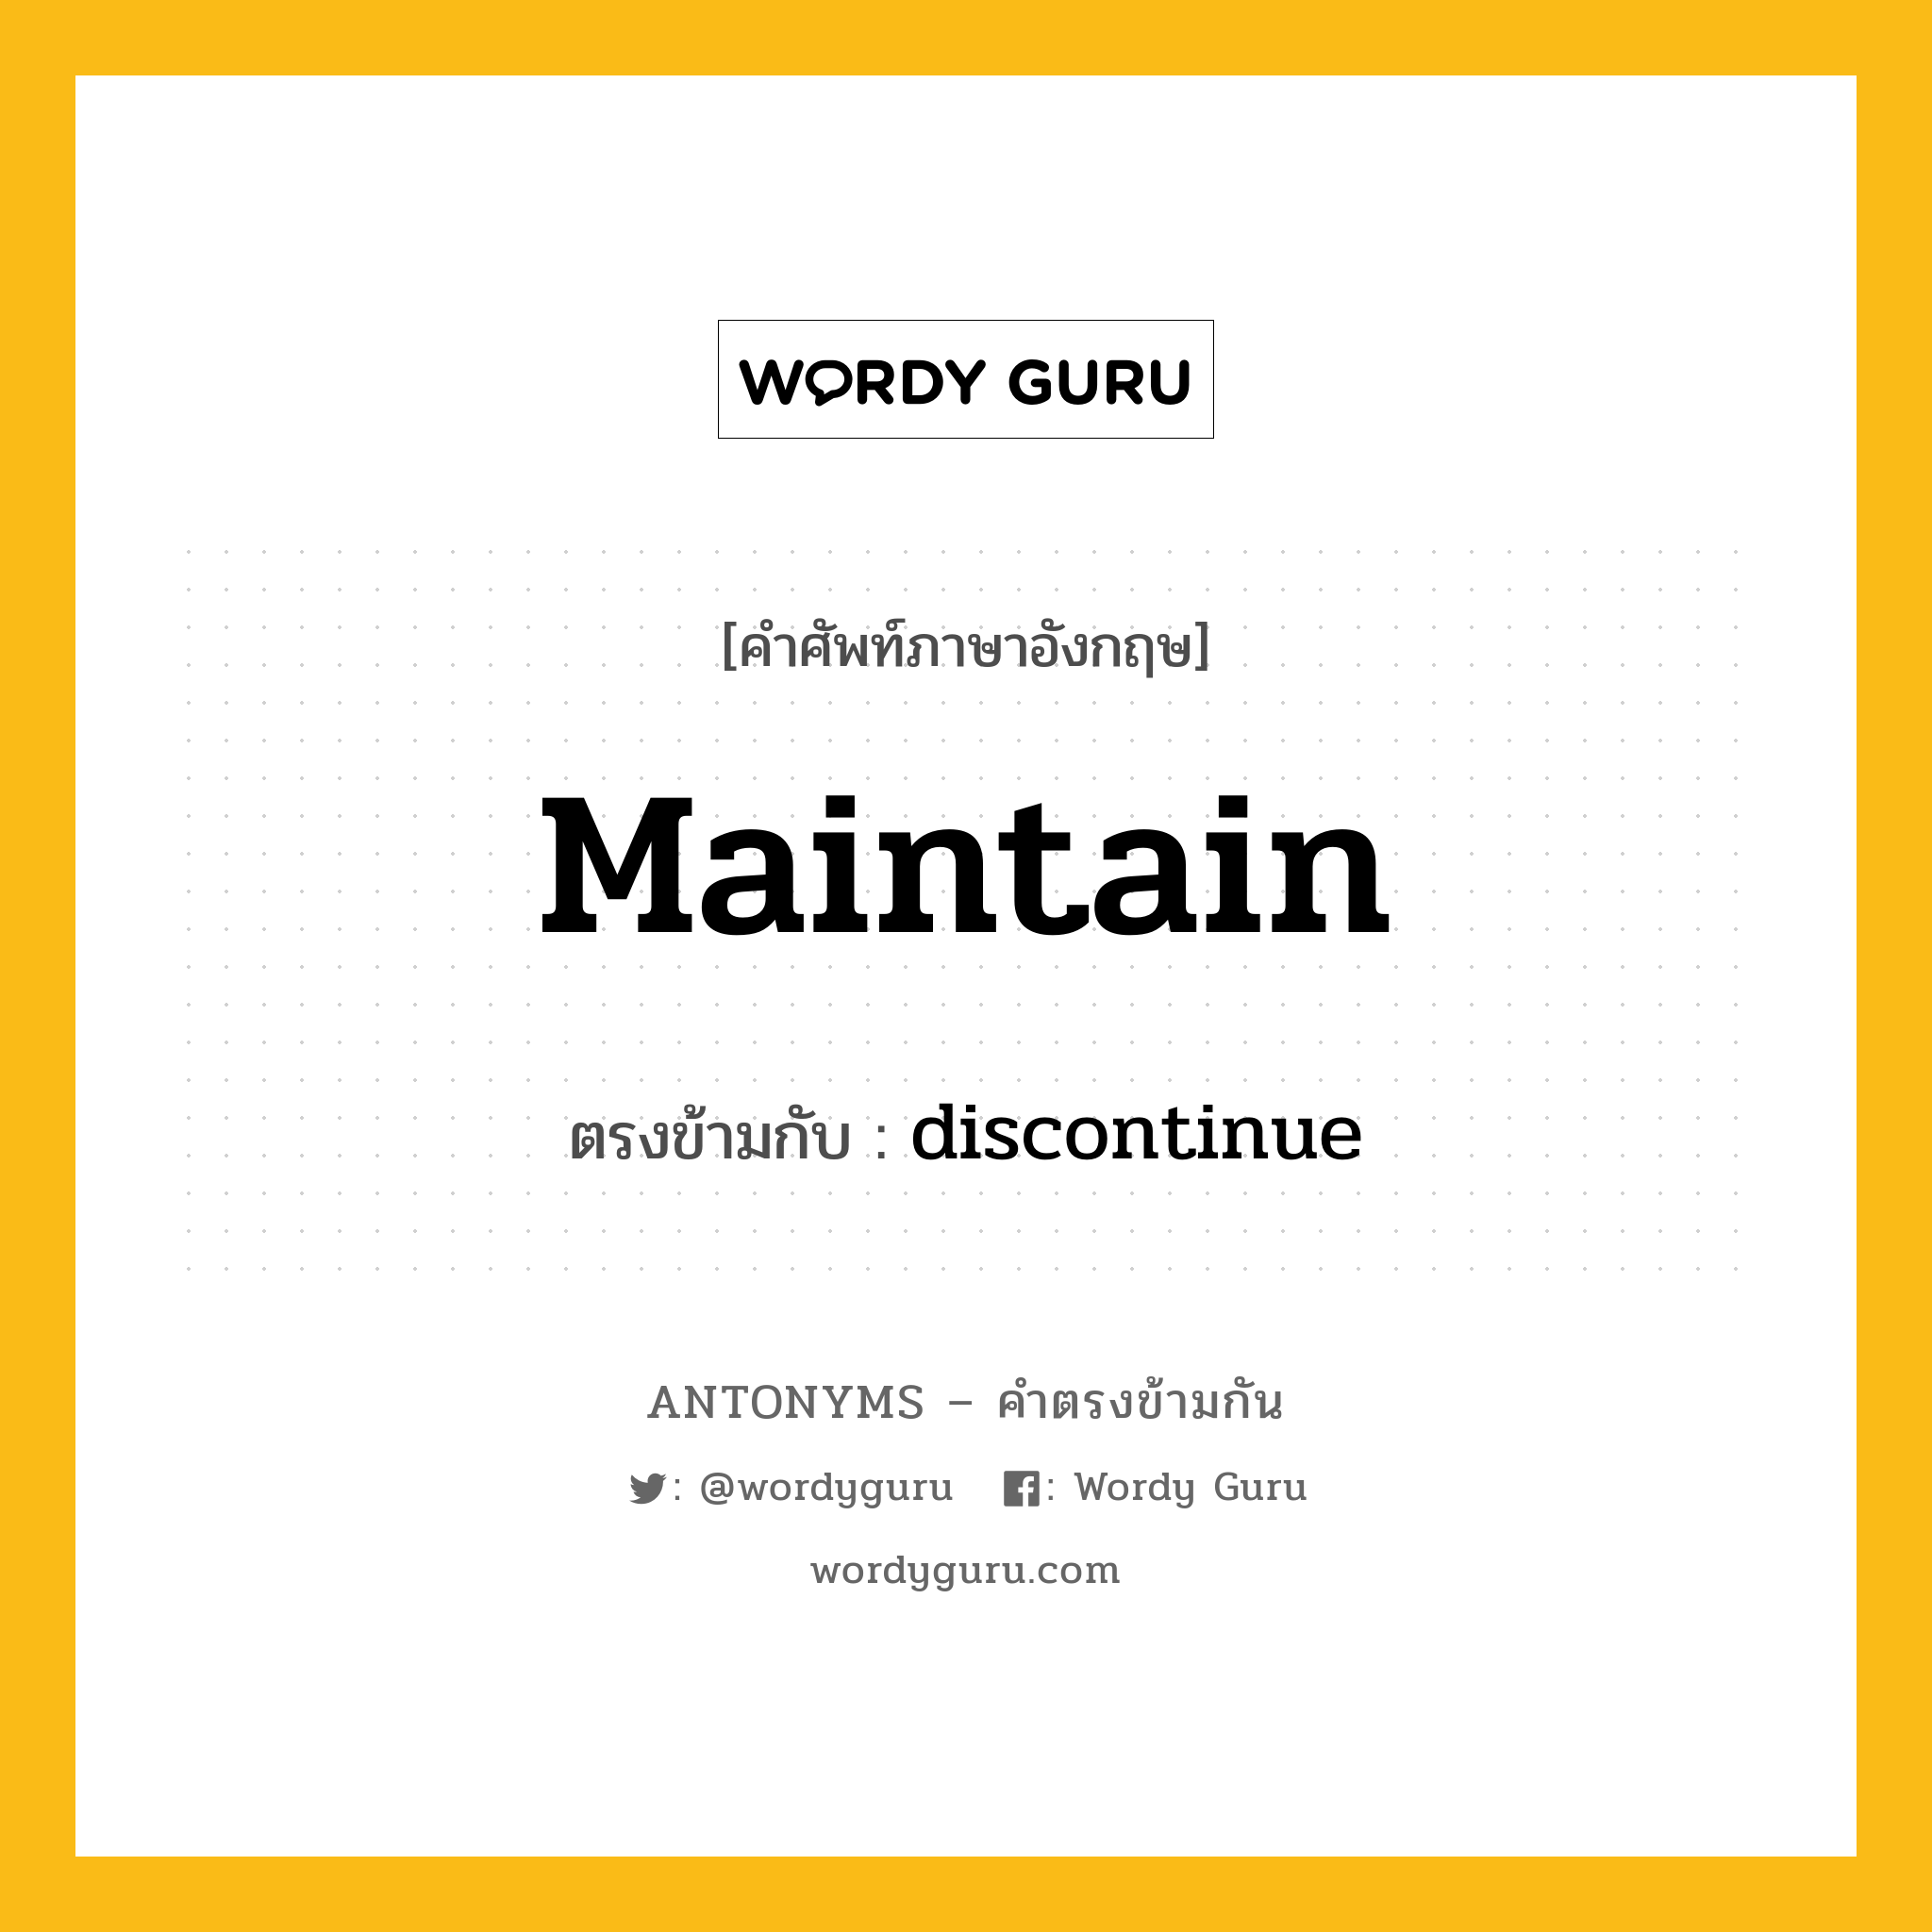 maintain เป็นคำตรงข้ามกับคำไหนบ้าง?, คำศัพท์ภาษาอังกฤษ maintain ตรงข้ามกับ discontinue หมวด discontinue